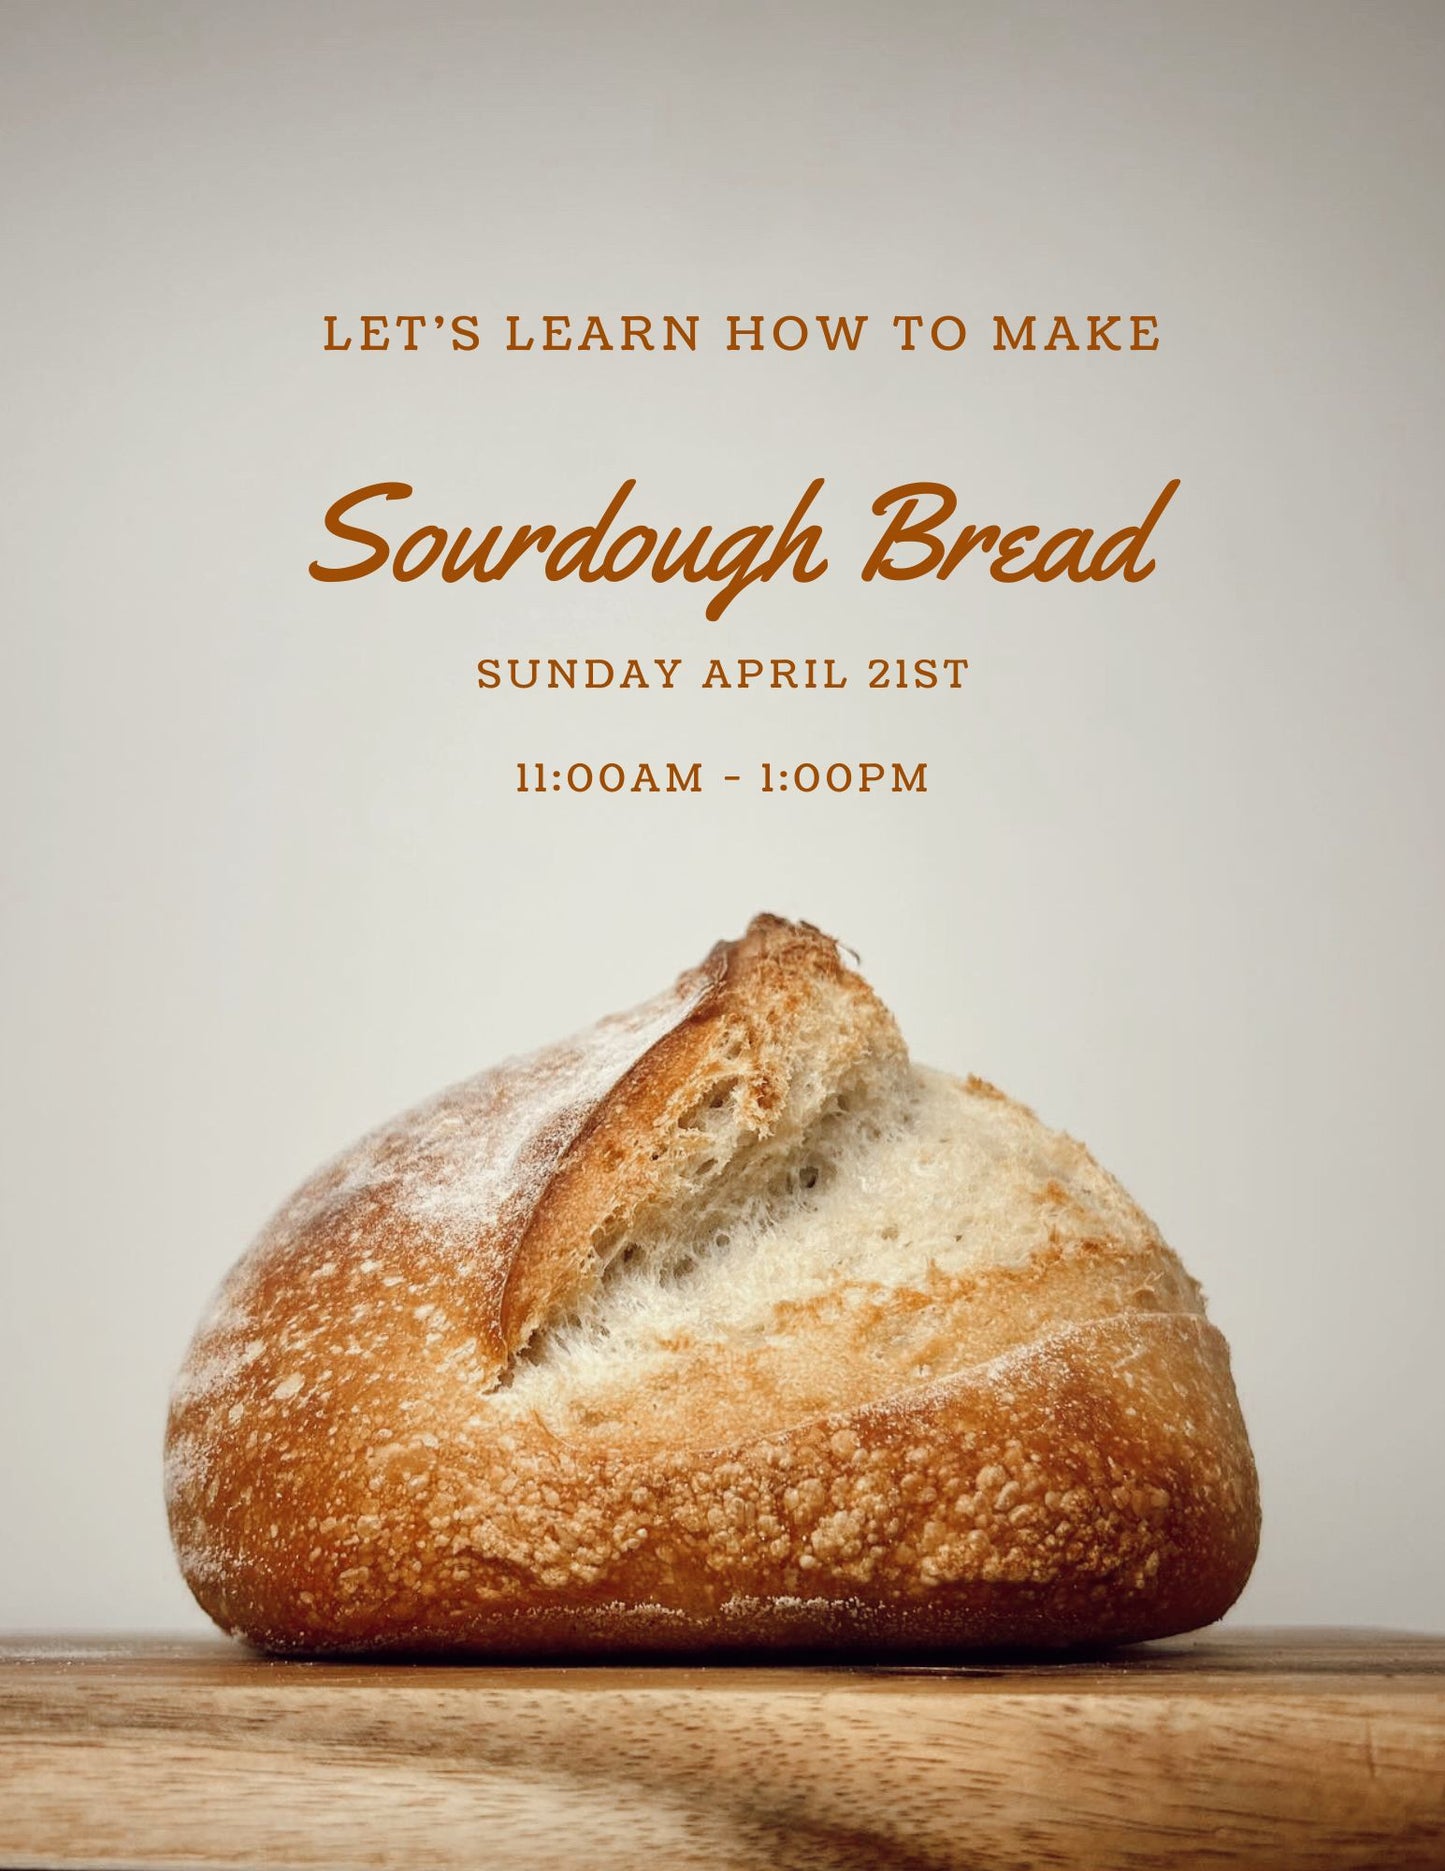 Sourdough Bread Making Class | Sunday April 21st |  11am